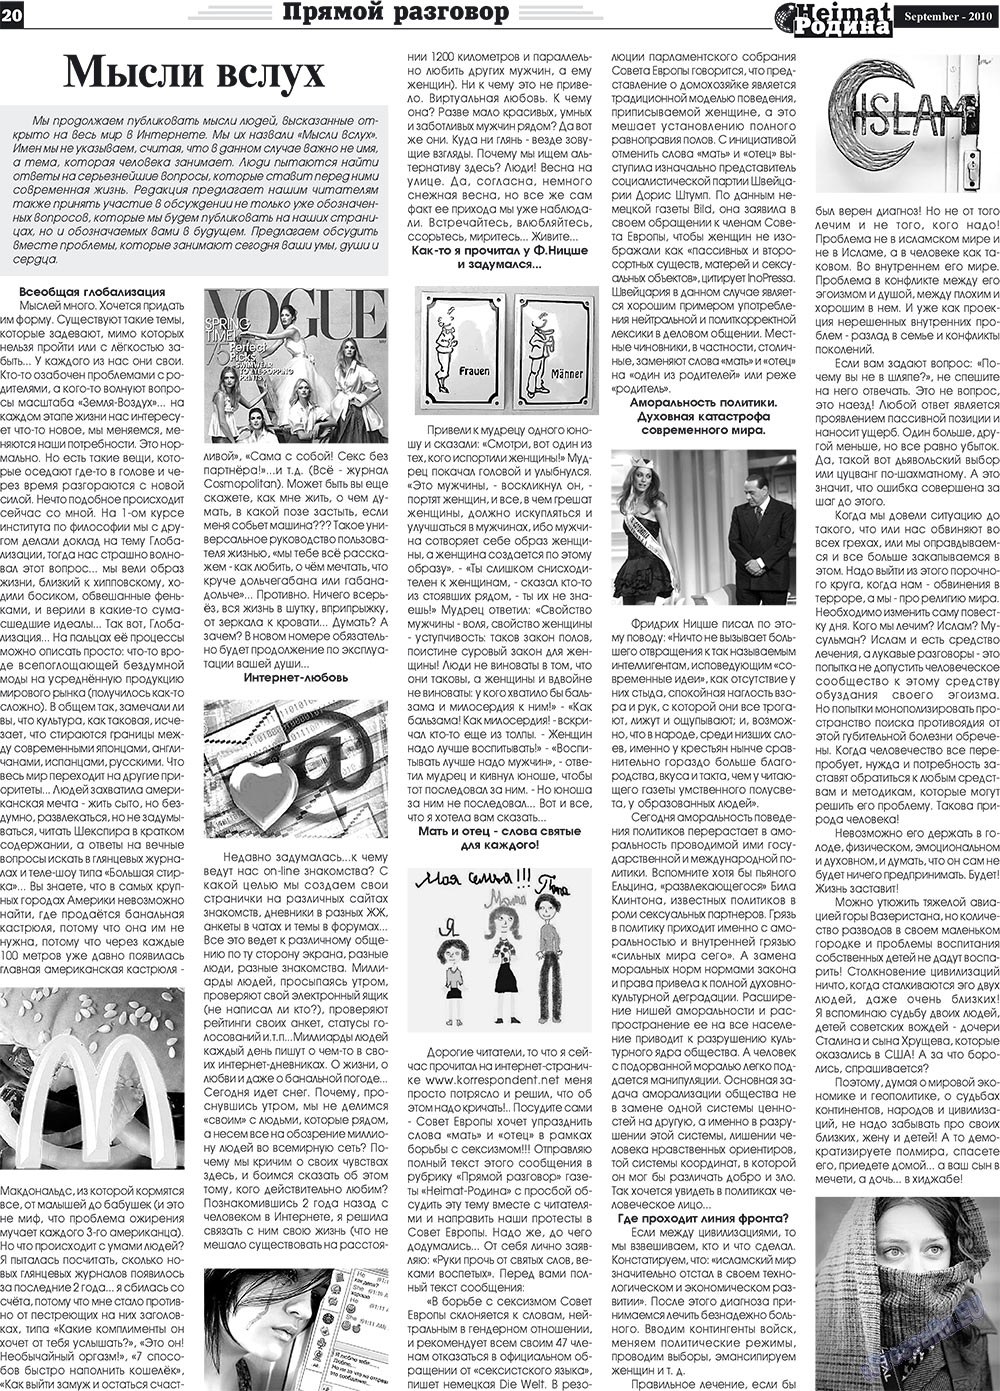 Heimat-Родина (газета). 2010 год, номер 9, стр. 20